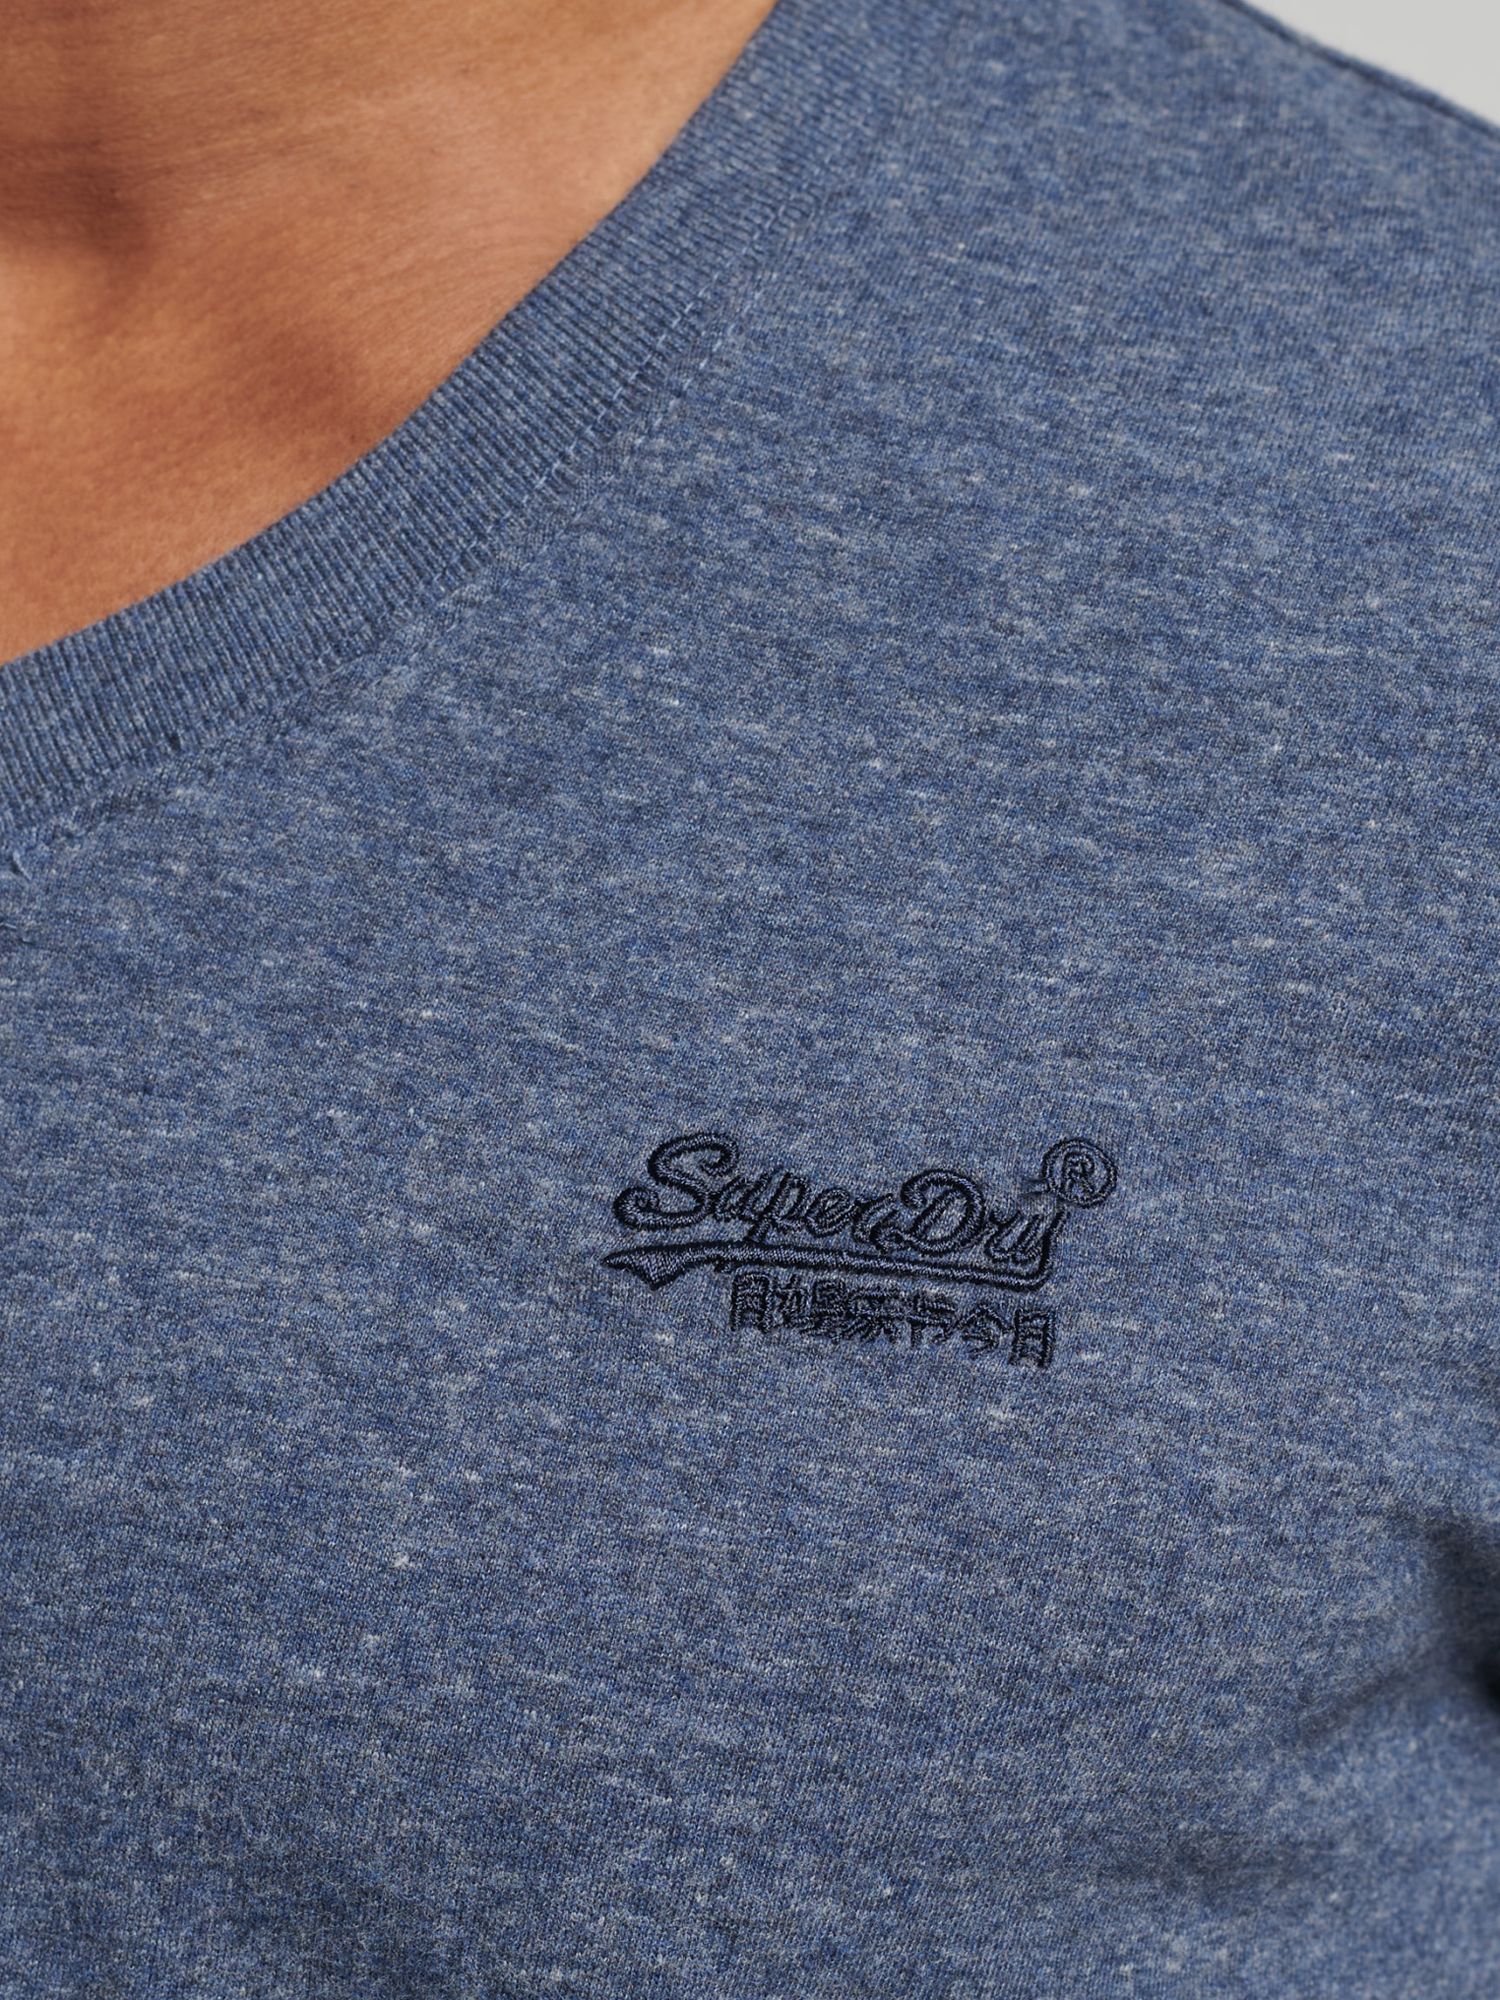 Buy Superdry Organic Cotton Vintage Logo V-Neck T-Shirt Online at johnlewis.com